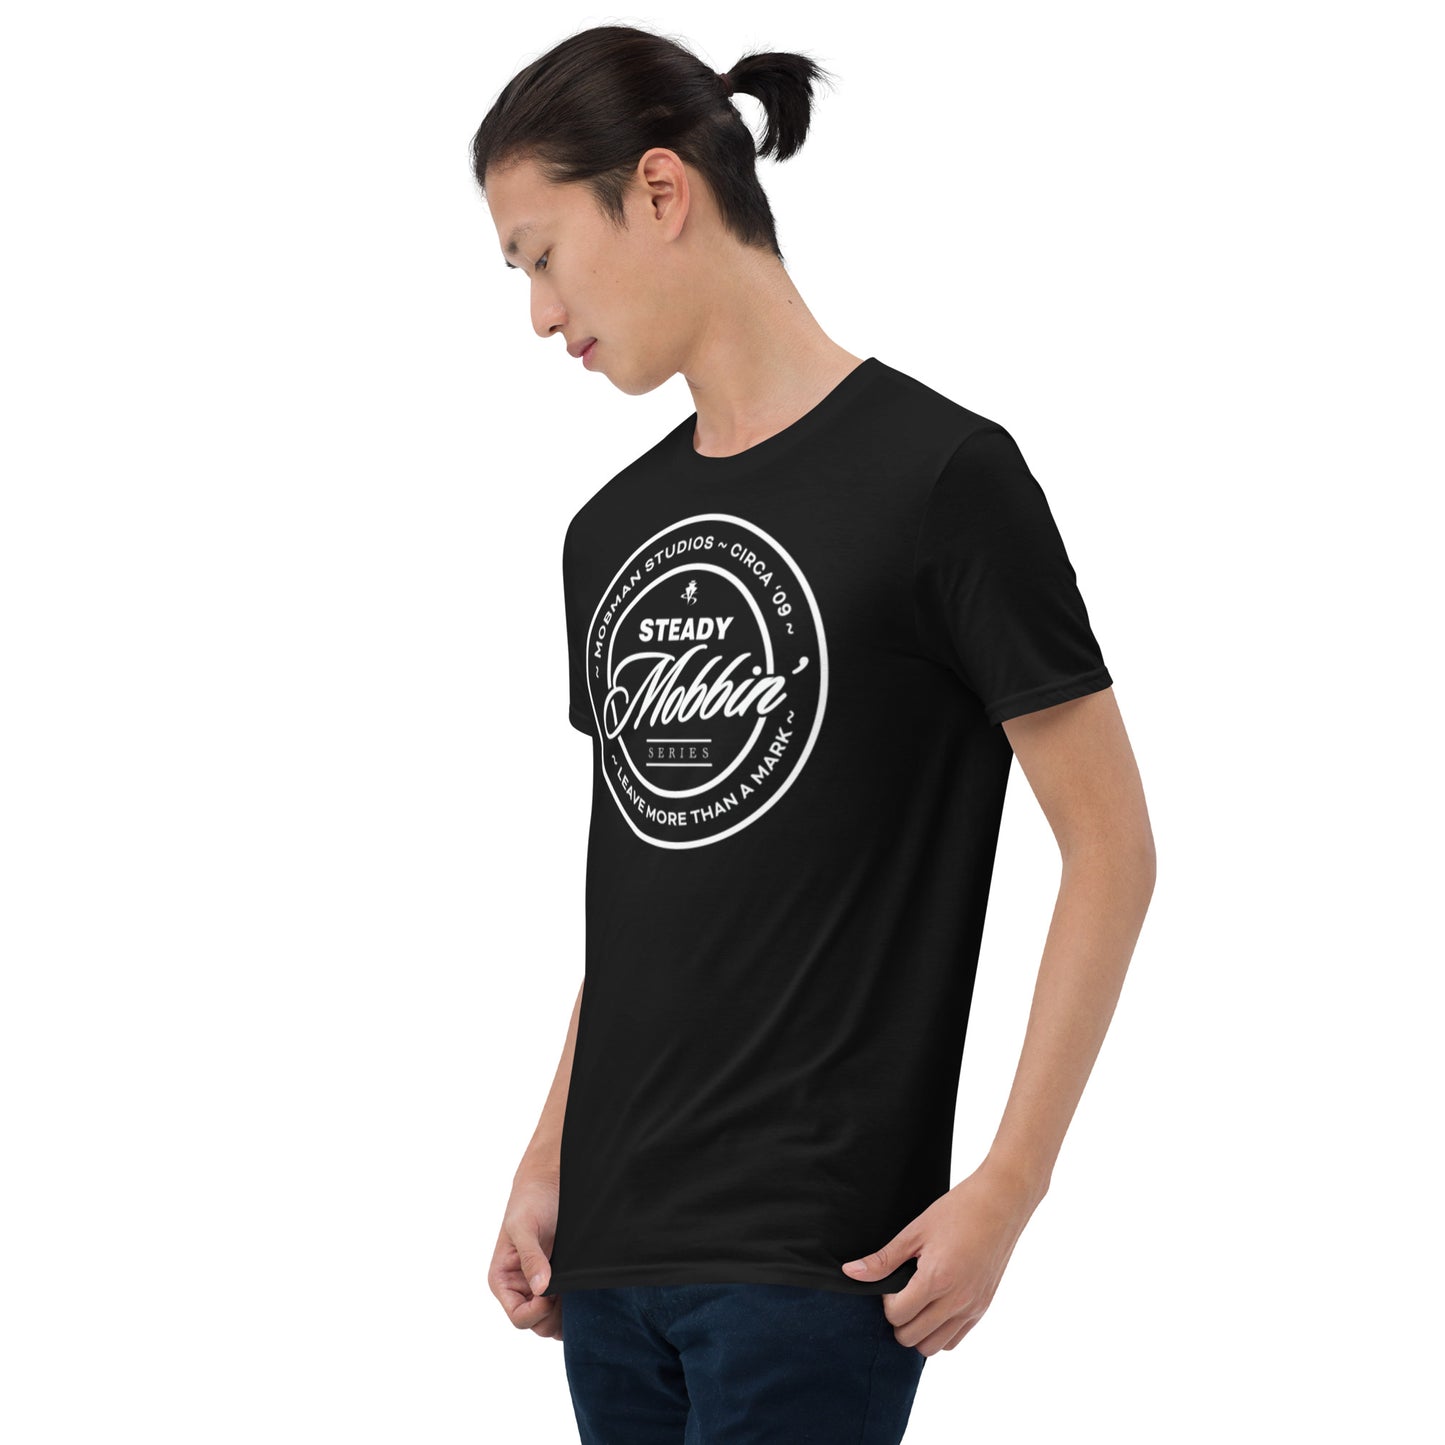 Steady Mobbin' Patch (Short-Sleeve Unisex T-Shirt)